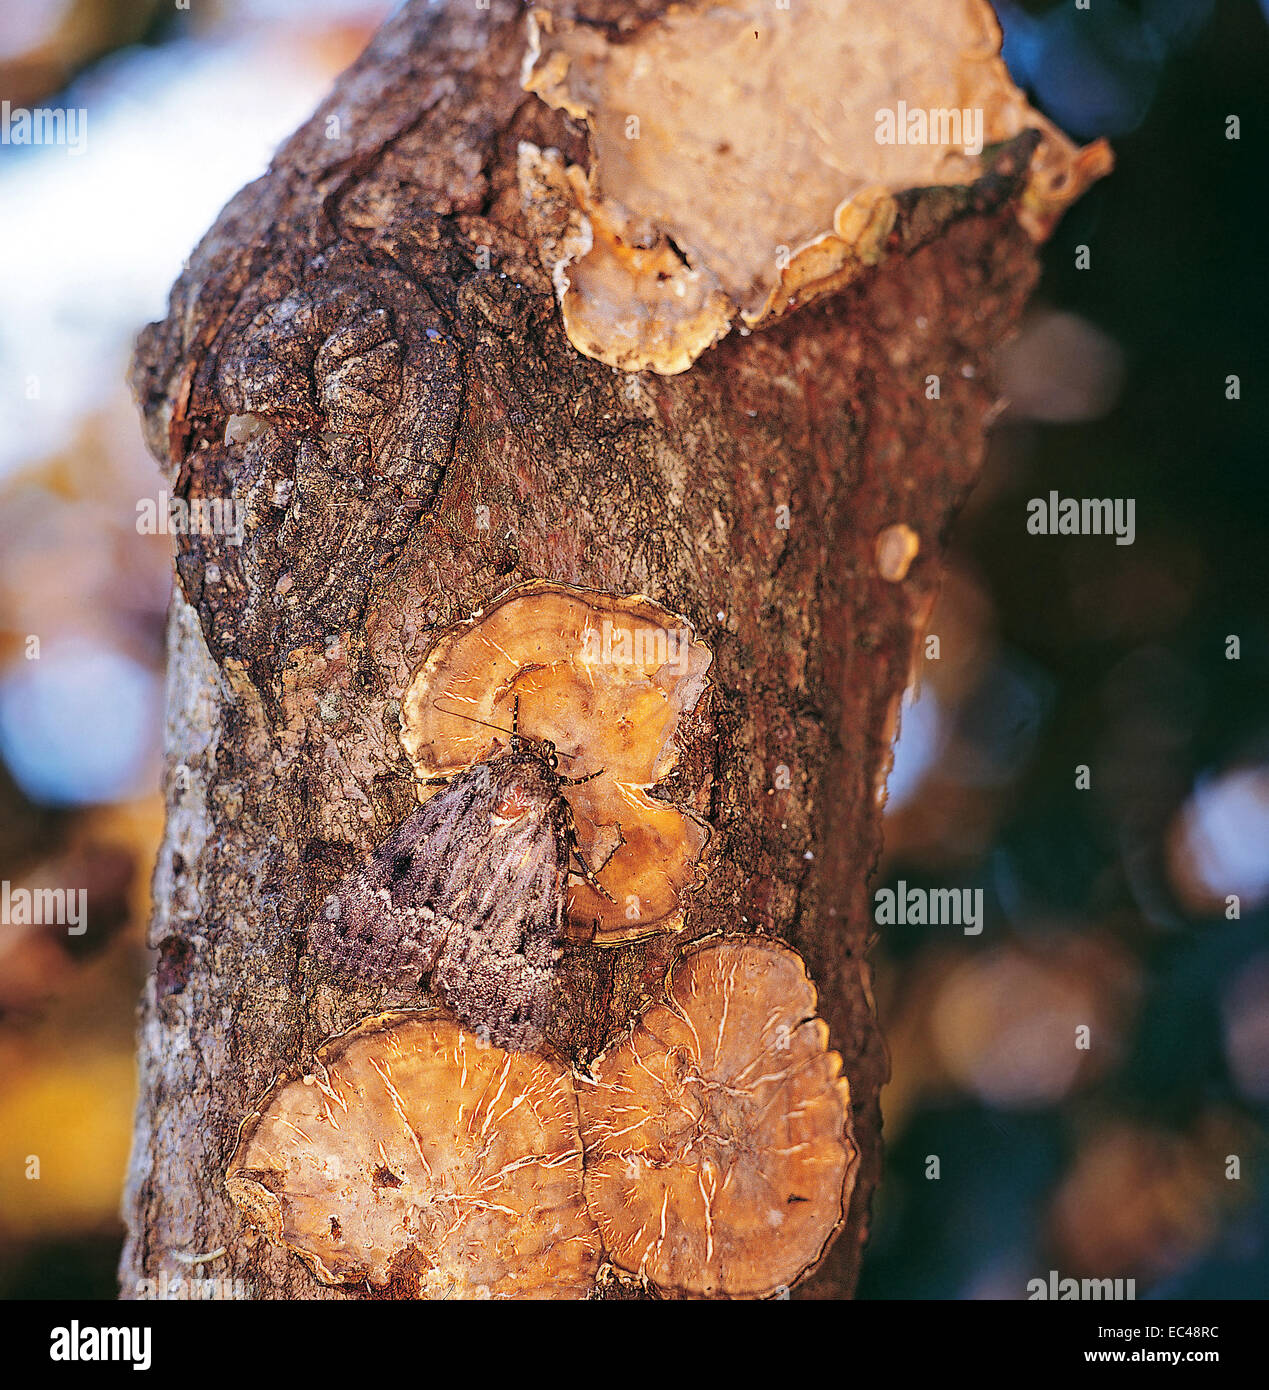 Mimica - Svensson in rame della falena underwing (Amphipyra berbera) mimetizzata sulla corteccia albero con i licheni Foto Stock